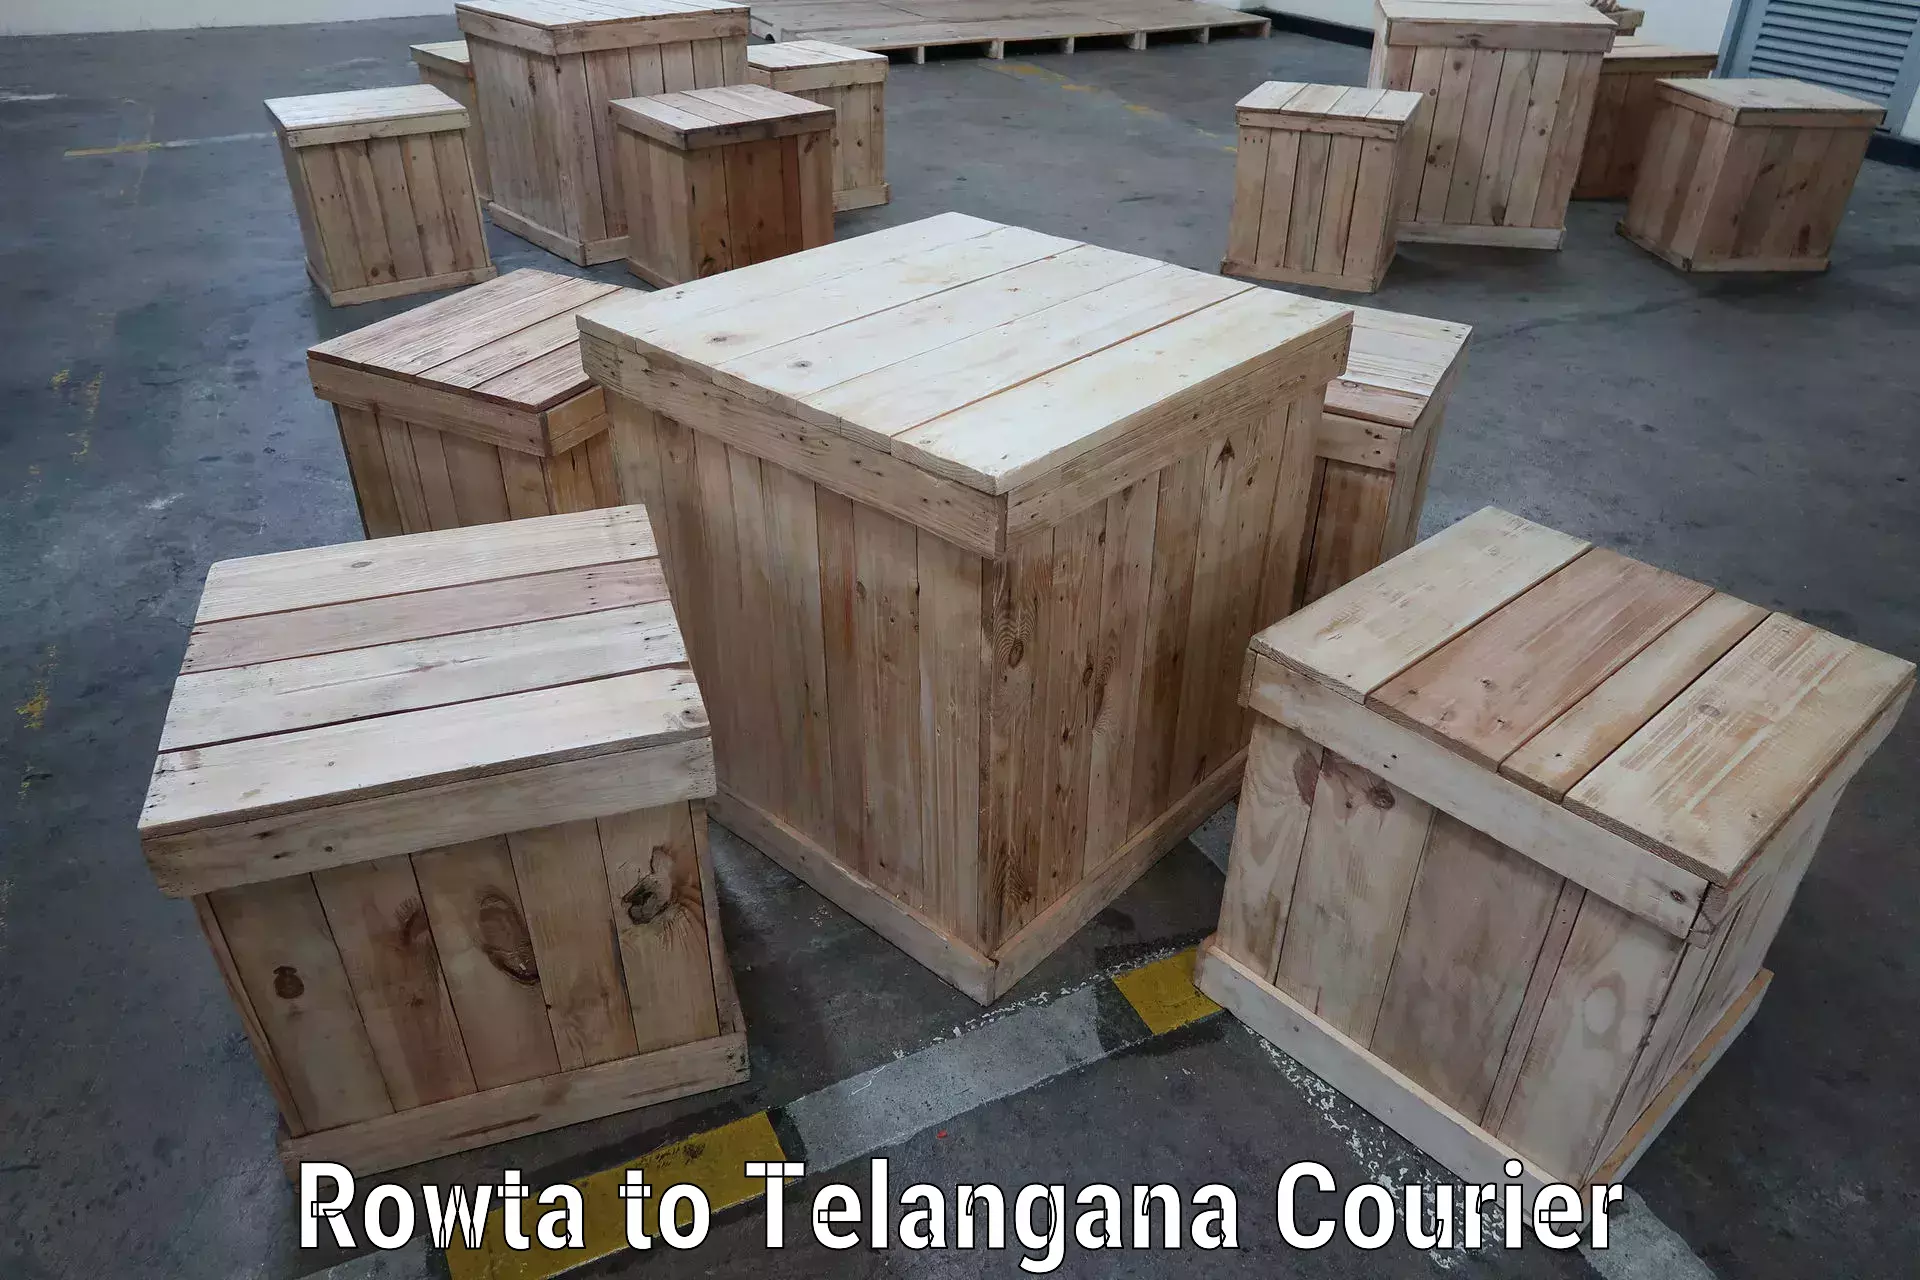 Efficient cargo handling Rowta to Kothakota